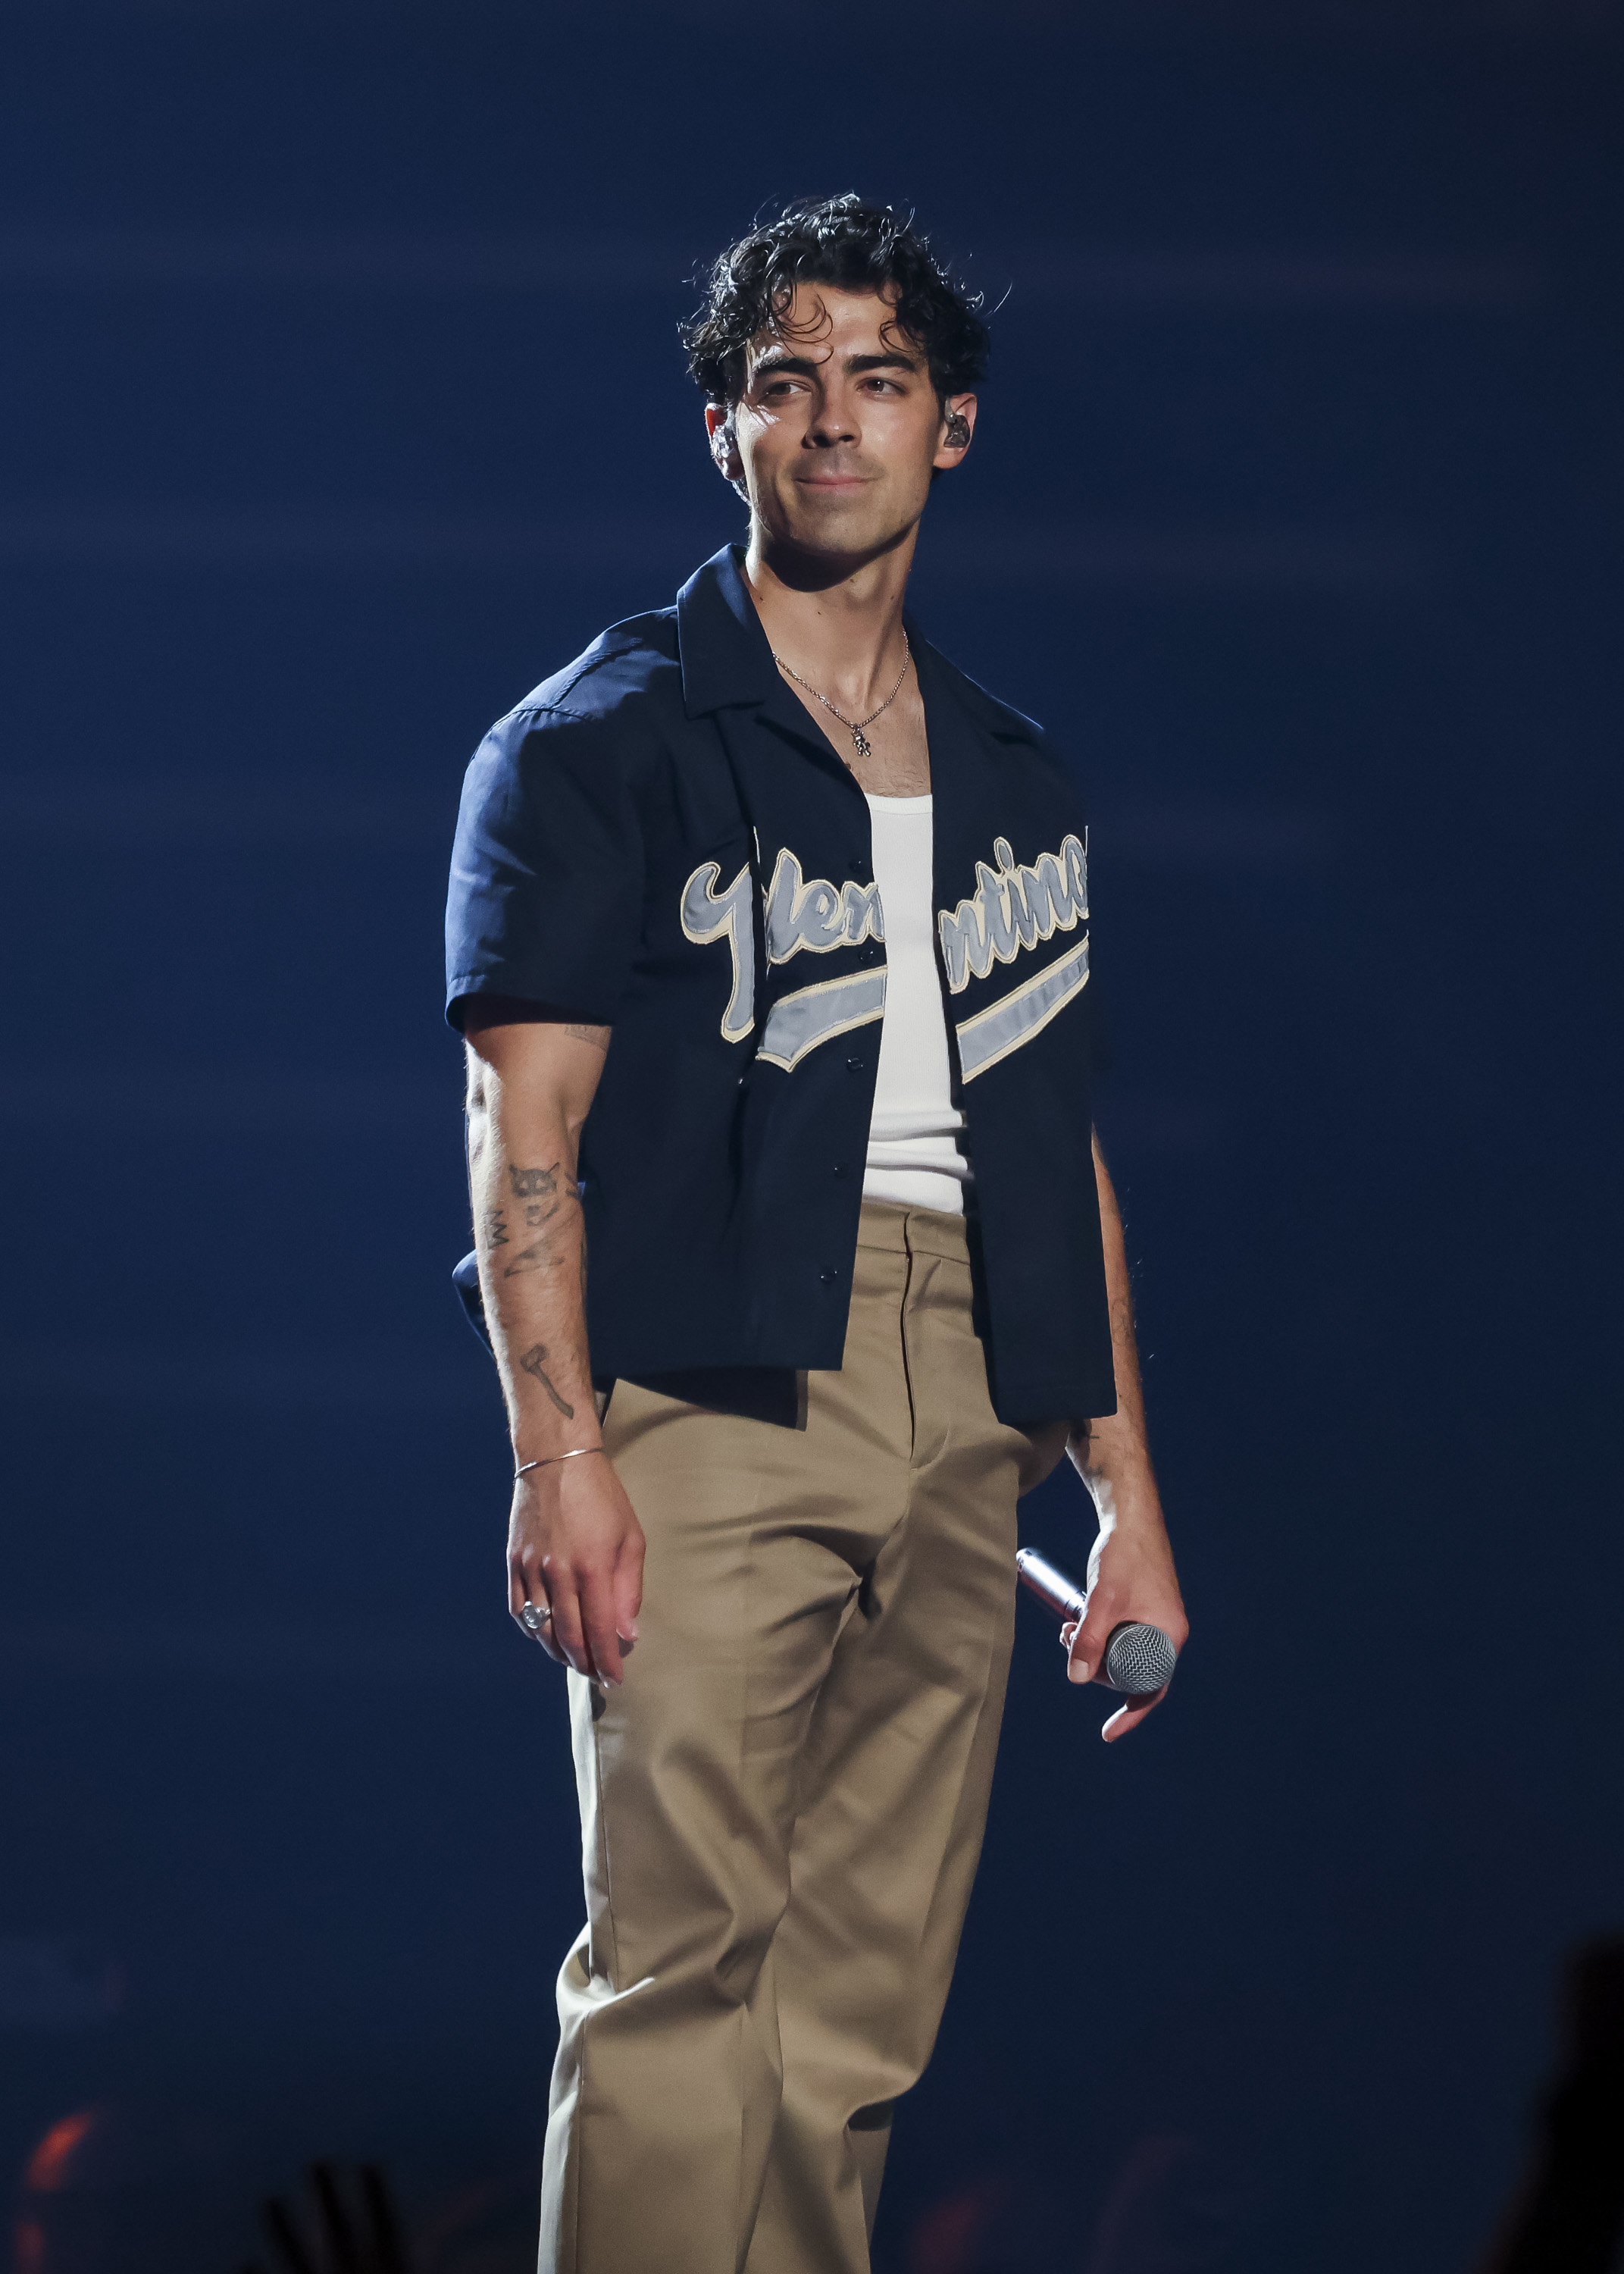 Joe Jonas on stage